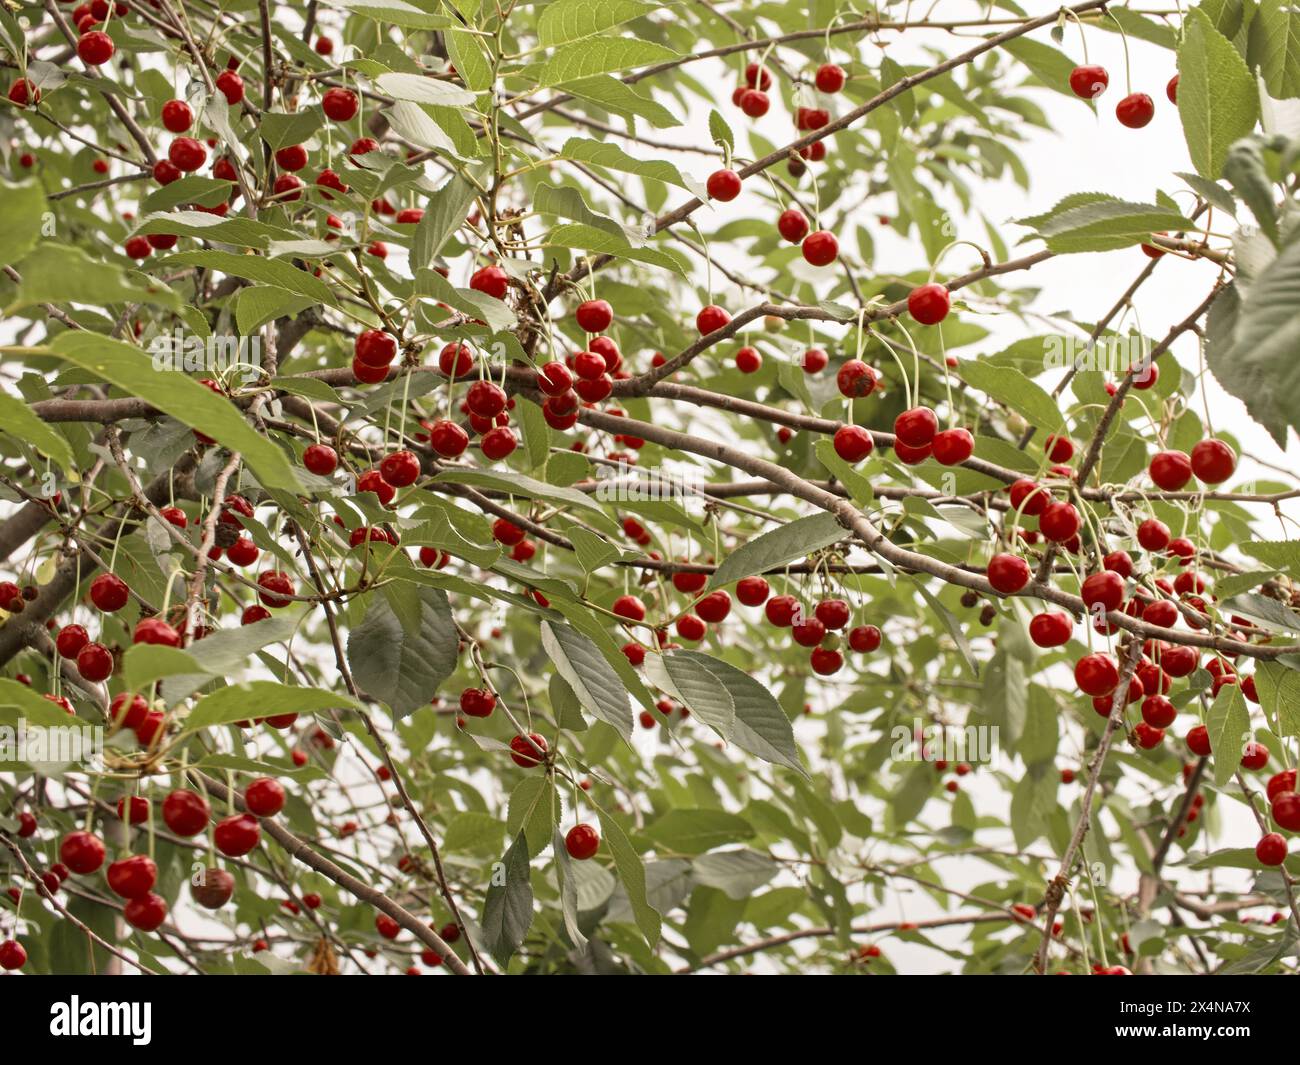 Le ciliegie mature adornano i rami degli alberi, circondate da foglie lussureggianti; un simbolo della generosità estiva e della generosità della natura. Foto Stock